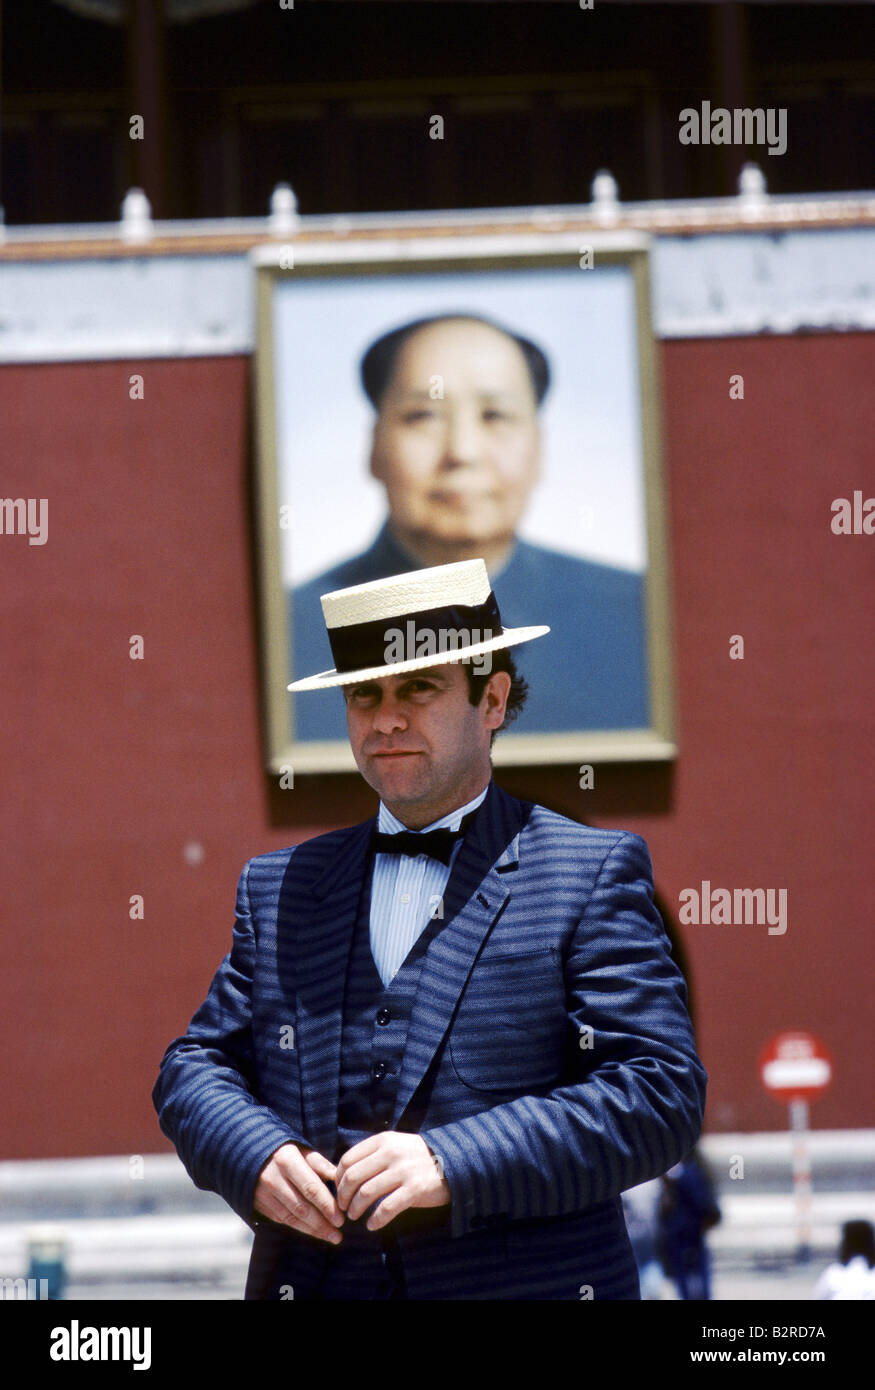 La chanteuse pop britannique Elton John Porter gentleman s'adapter à hat dans la place Tiananmen Mao s portrait en arrière-plan Banque D'Images